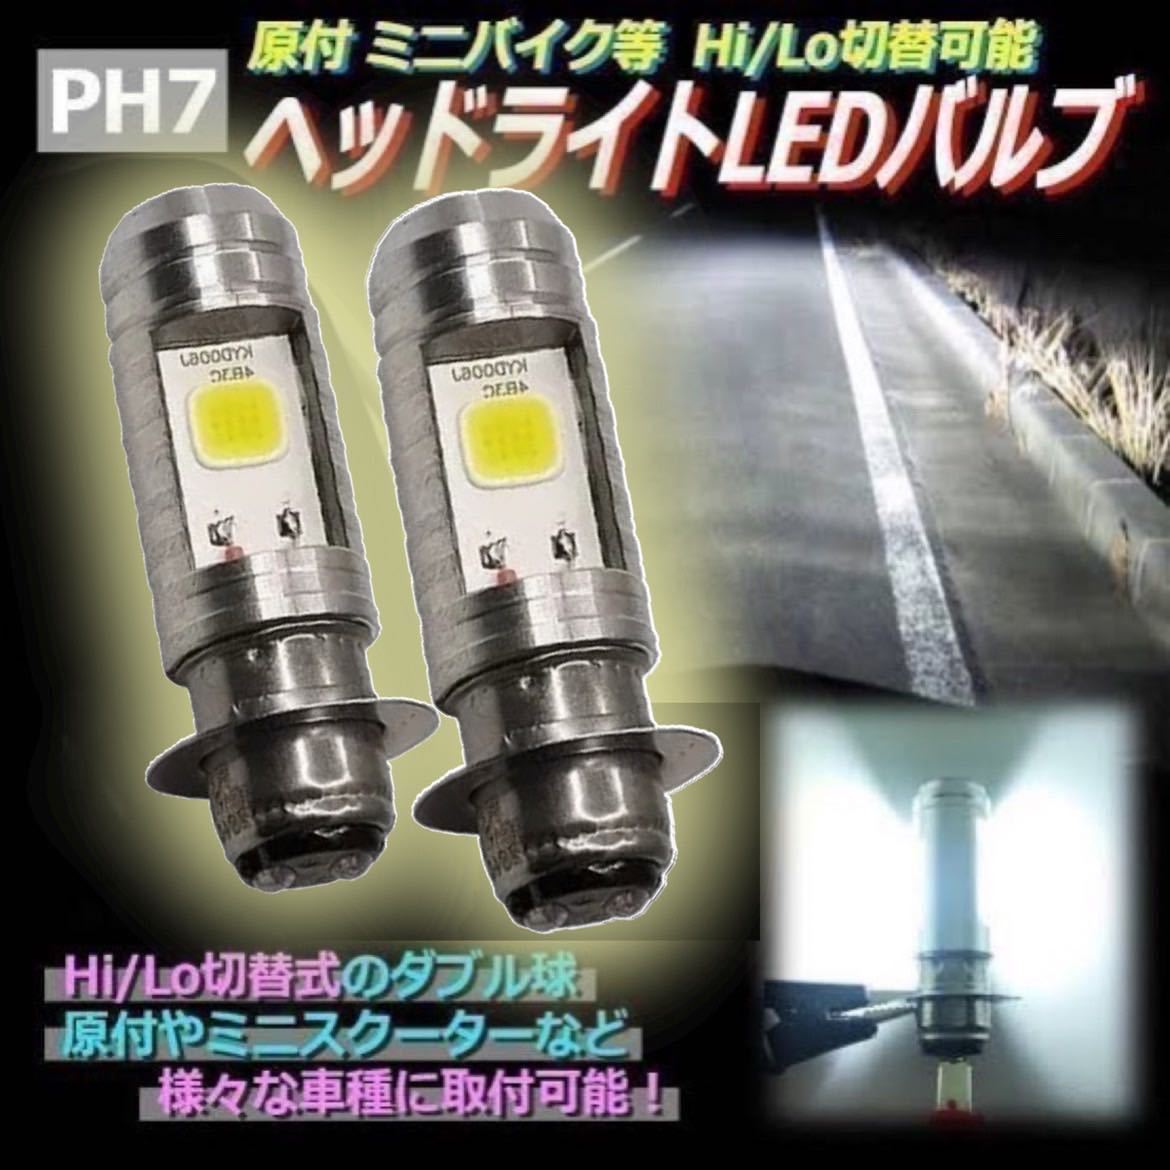 まもなく販売 バイク ヘッドライト LED PH7 原付 ホワイト スクーター 電球２個セット 特注生産:240円  ライト、ウィンカー1組